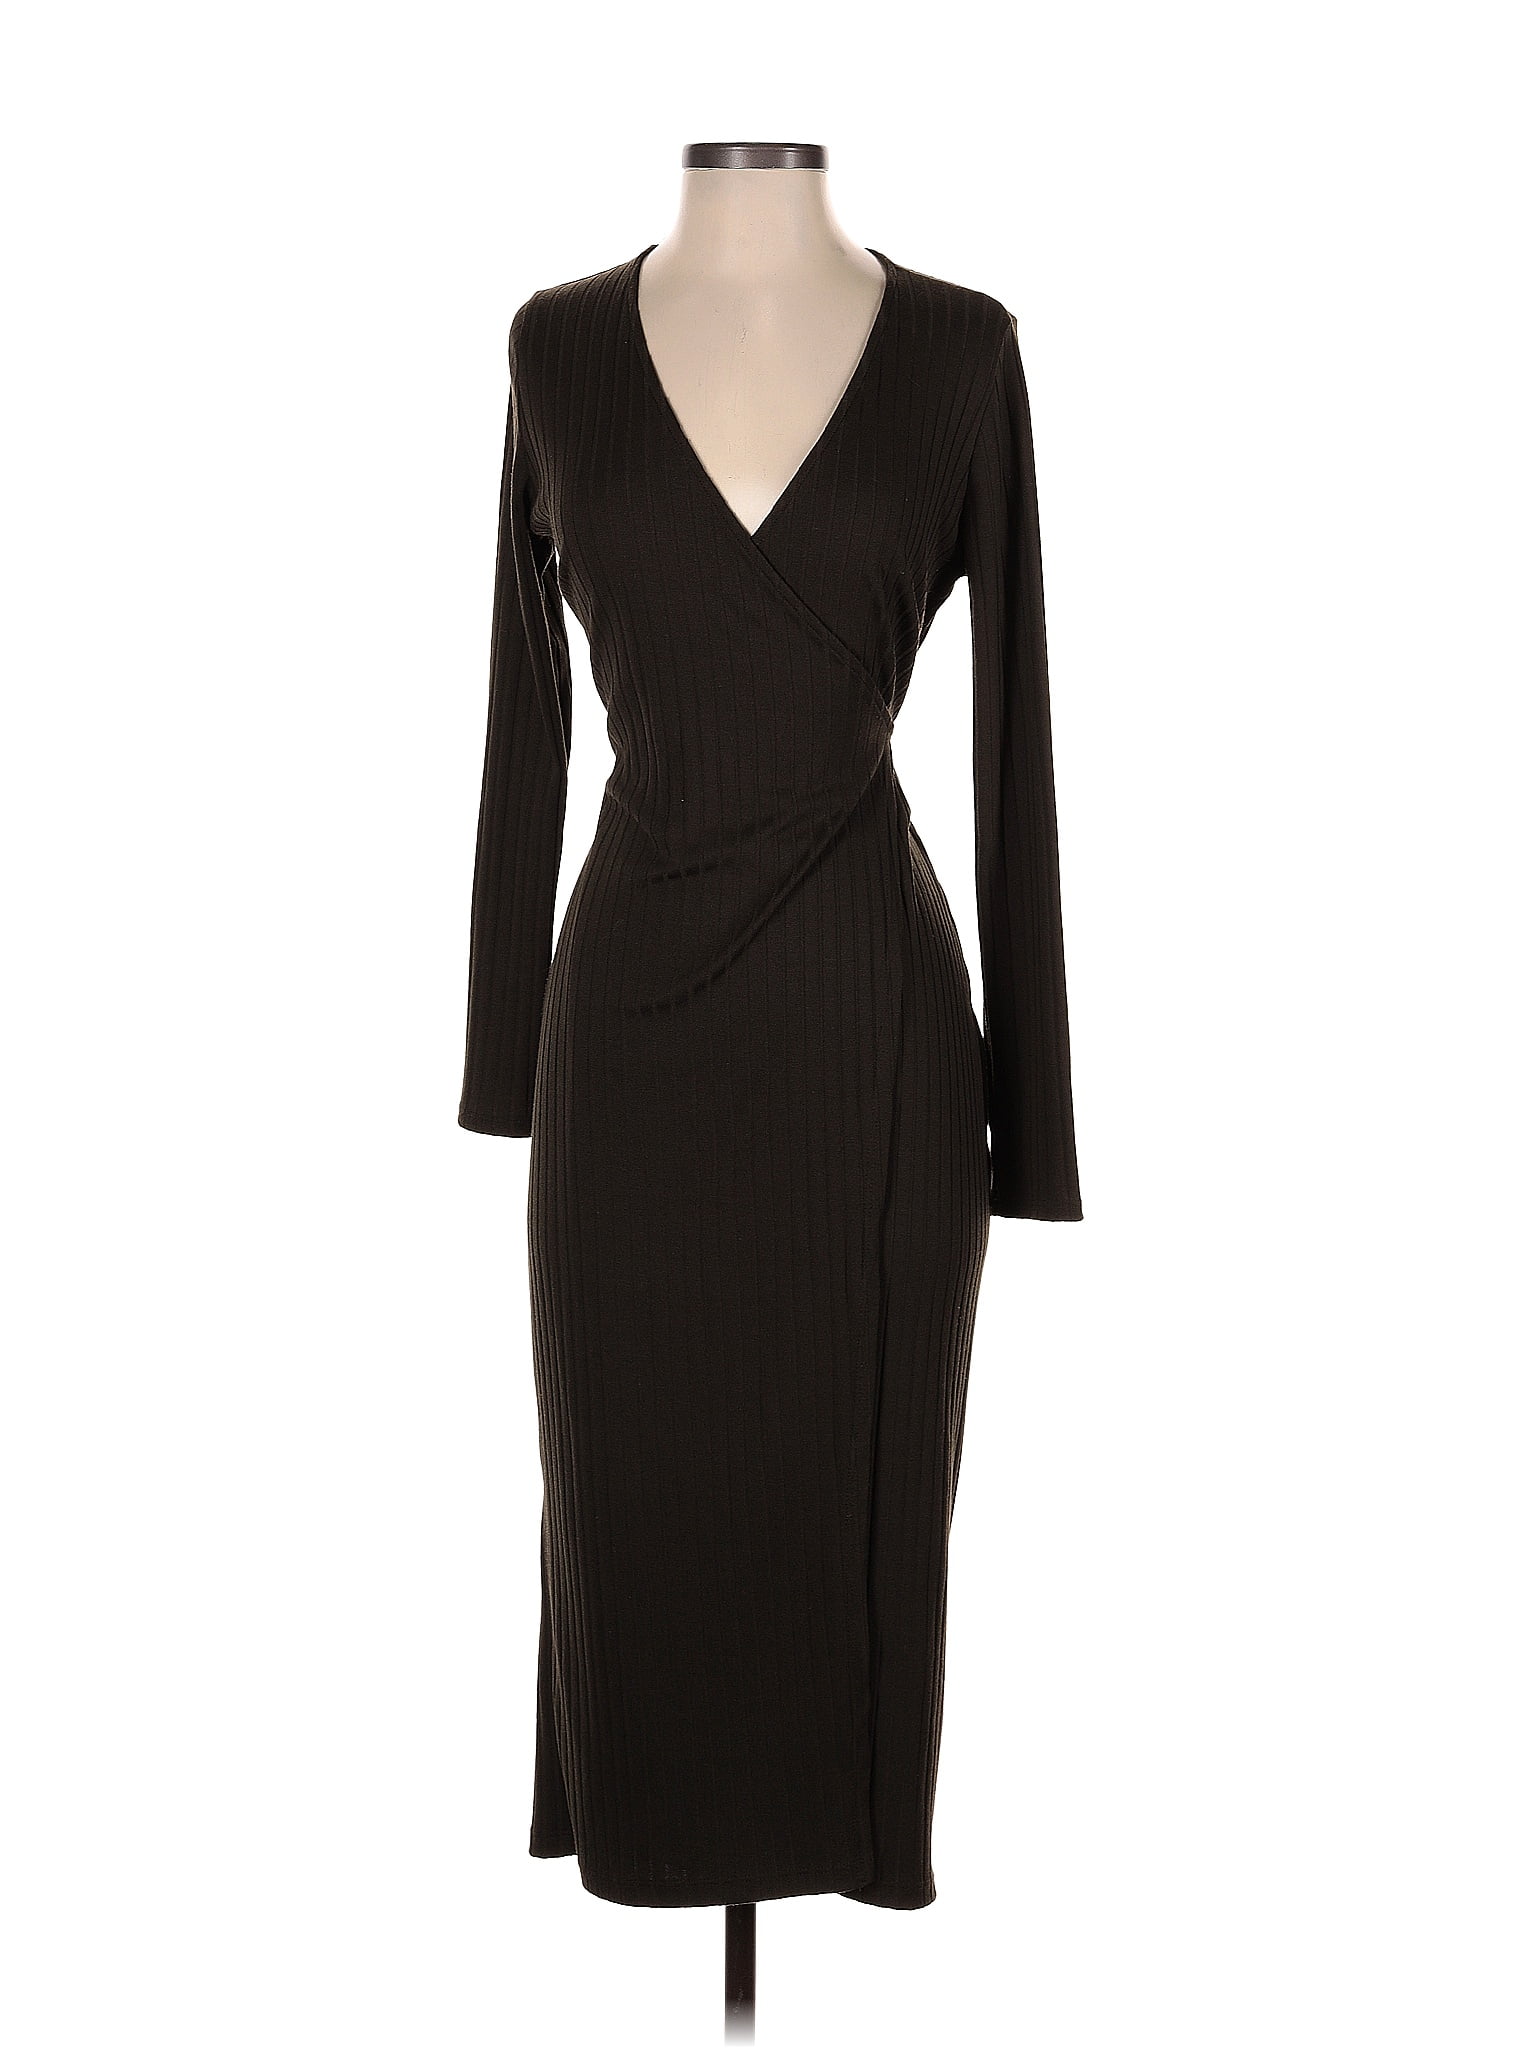 ASTR The Label Solid Black Cocktail Dress Size S - 69% off | ThredUp